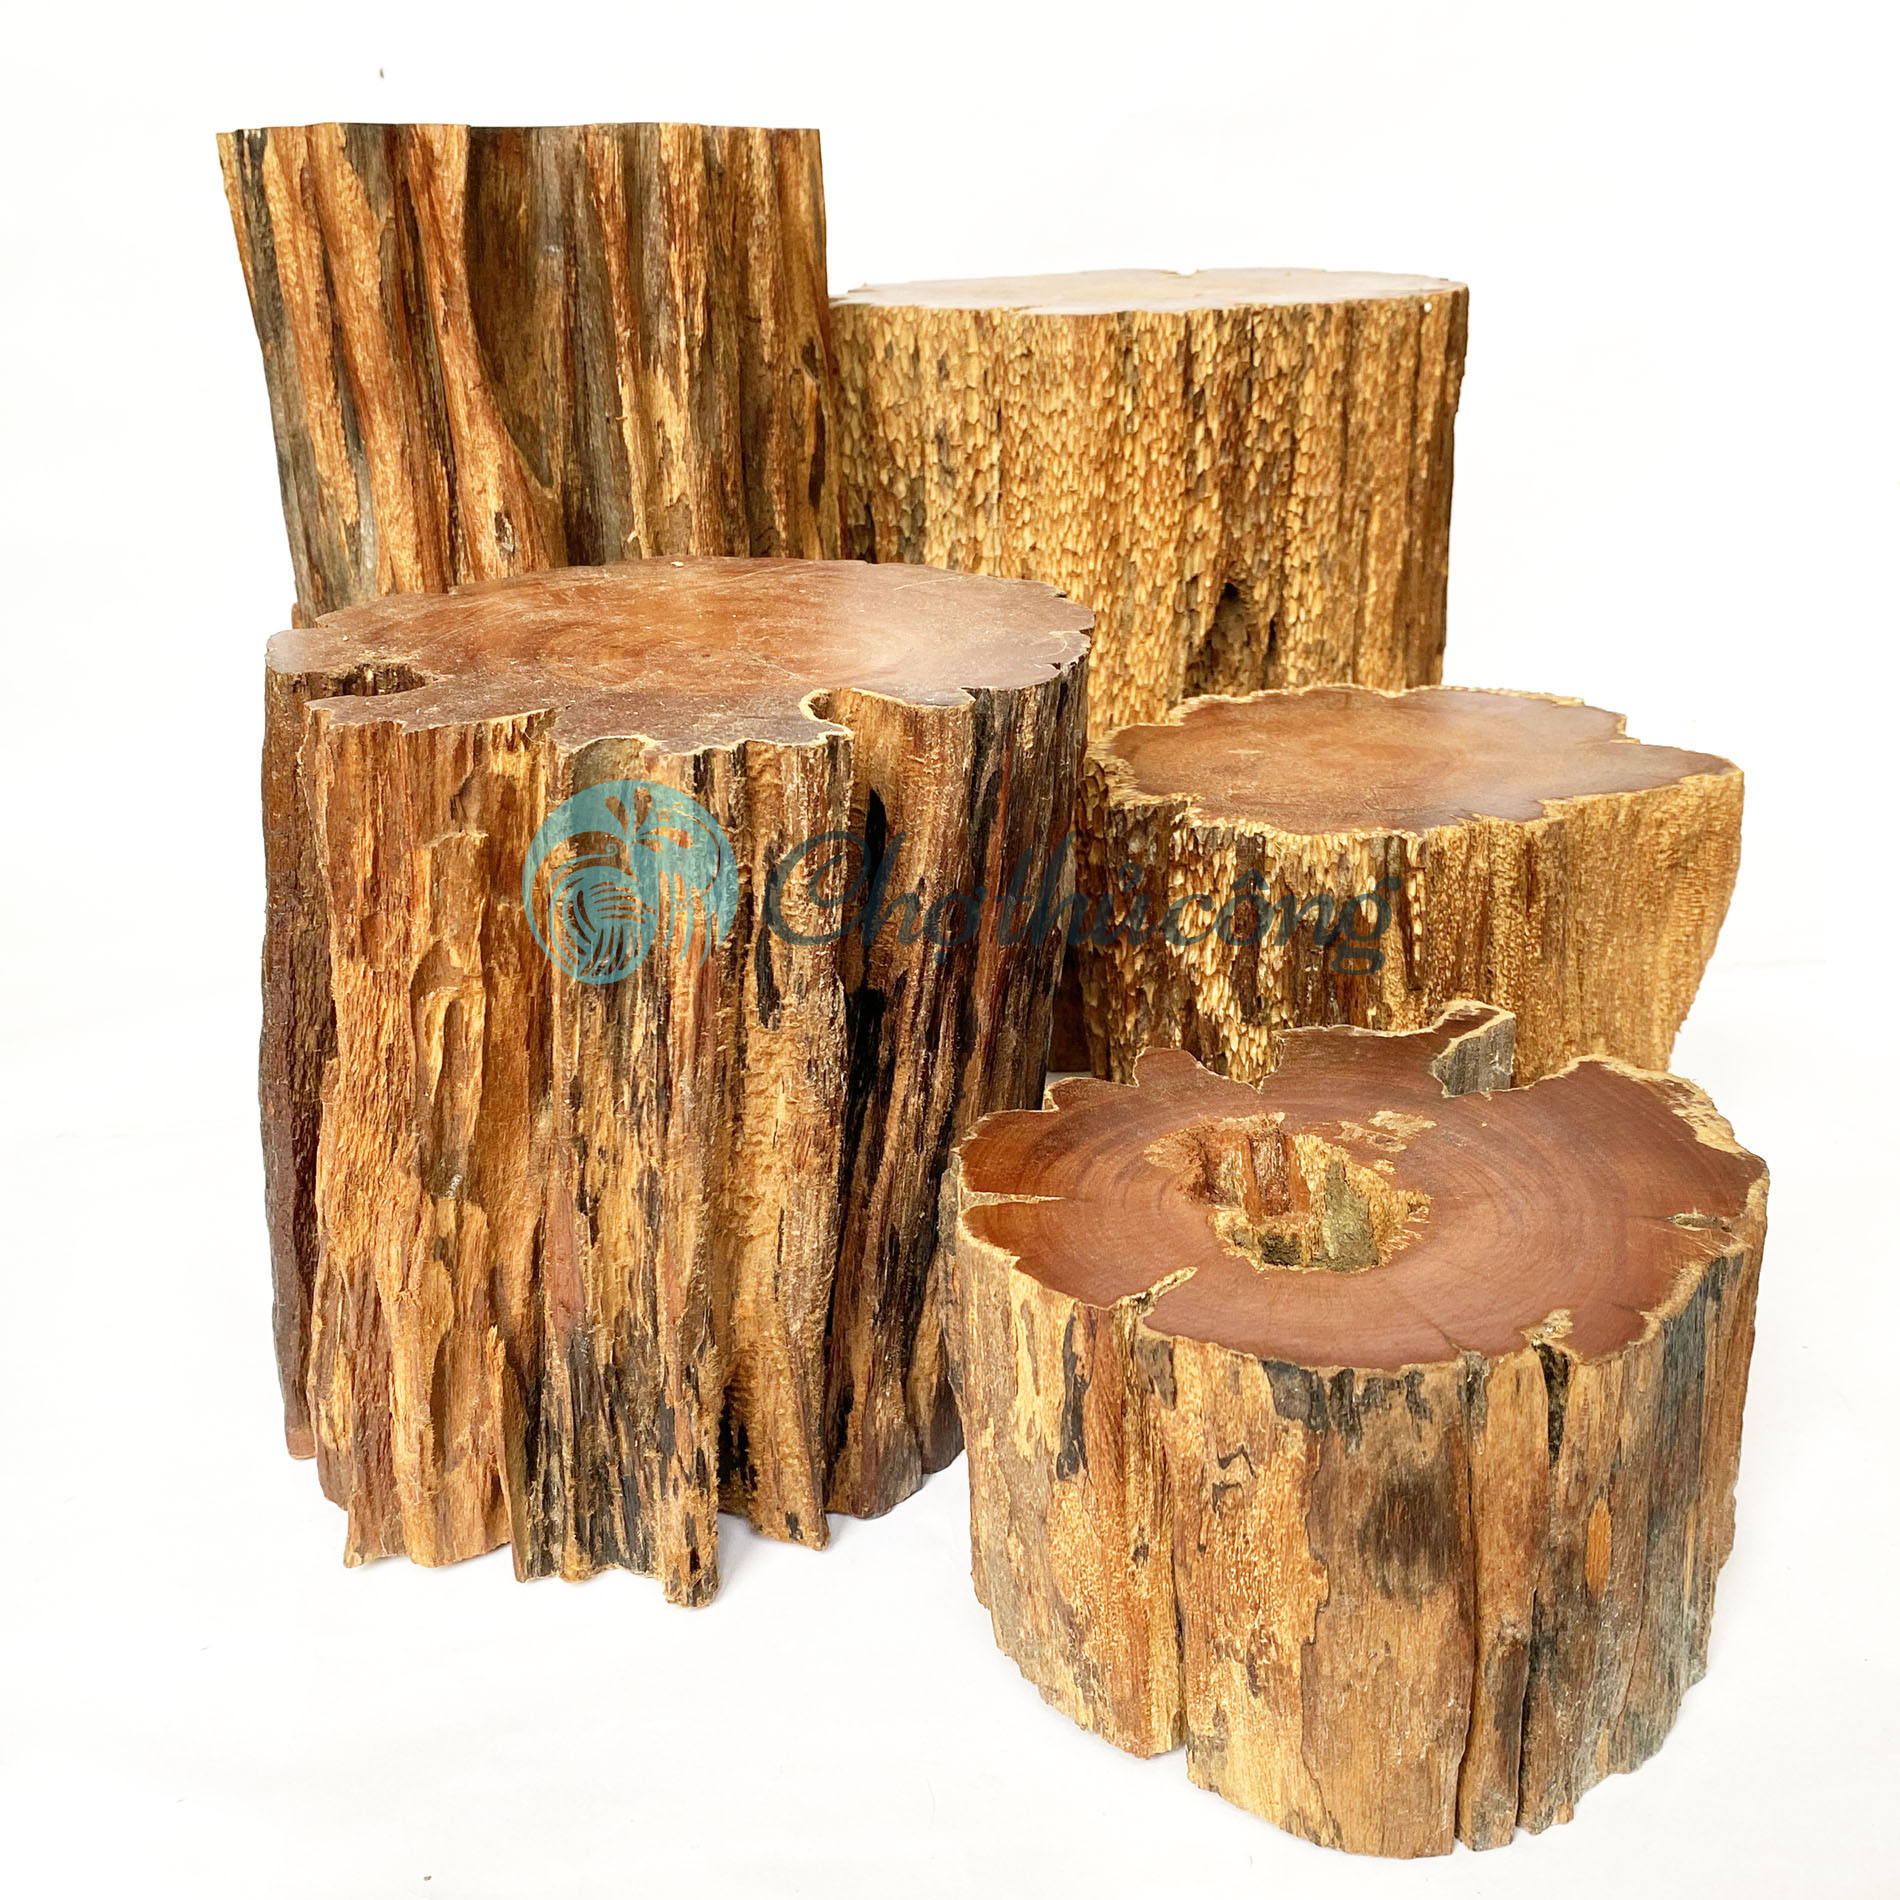 Đôn gỗ kê tượng phật, đôn để chậu cây - Ghế đôn gỗ lũa, kệ gỗ để tượng decor, khoanh gỗ tự nhiên (phát mẫu ngẫu nhiên)